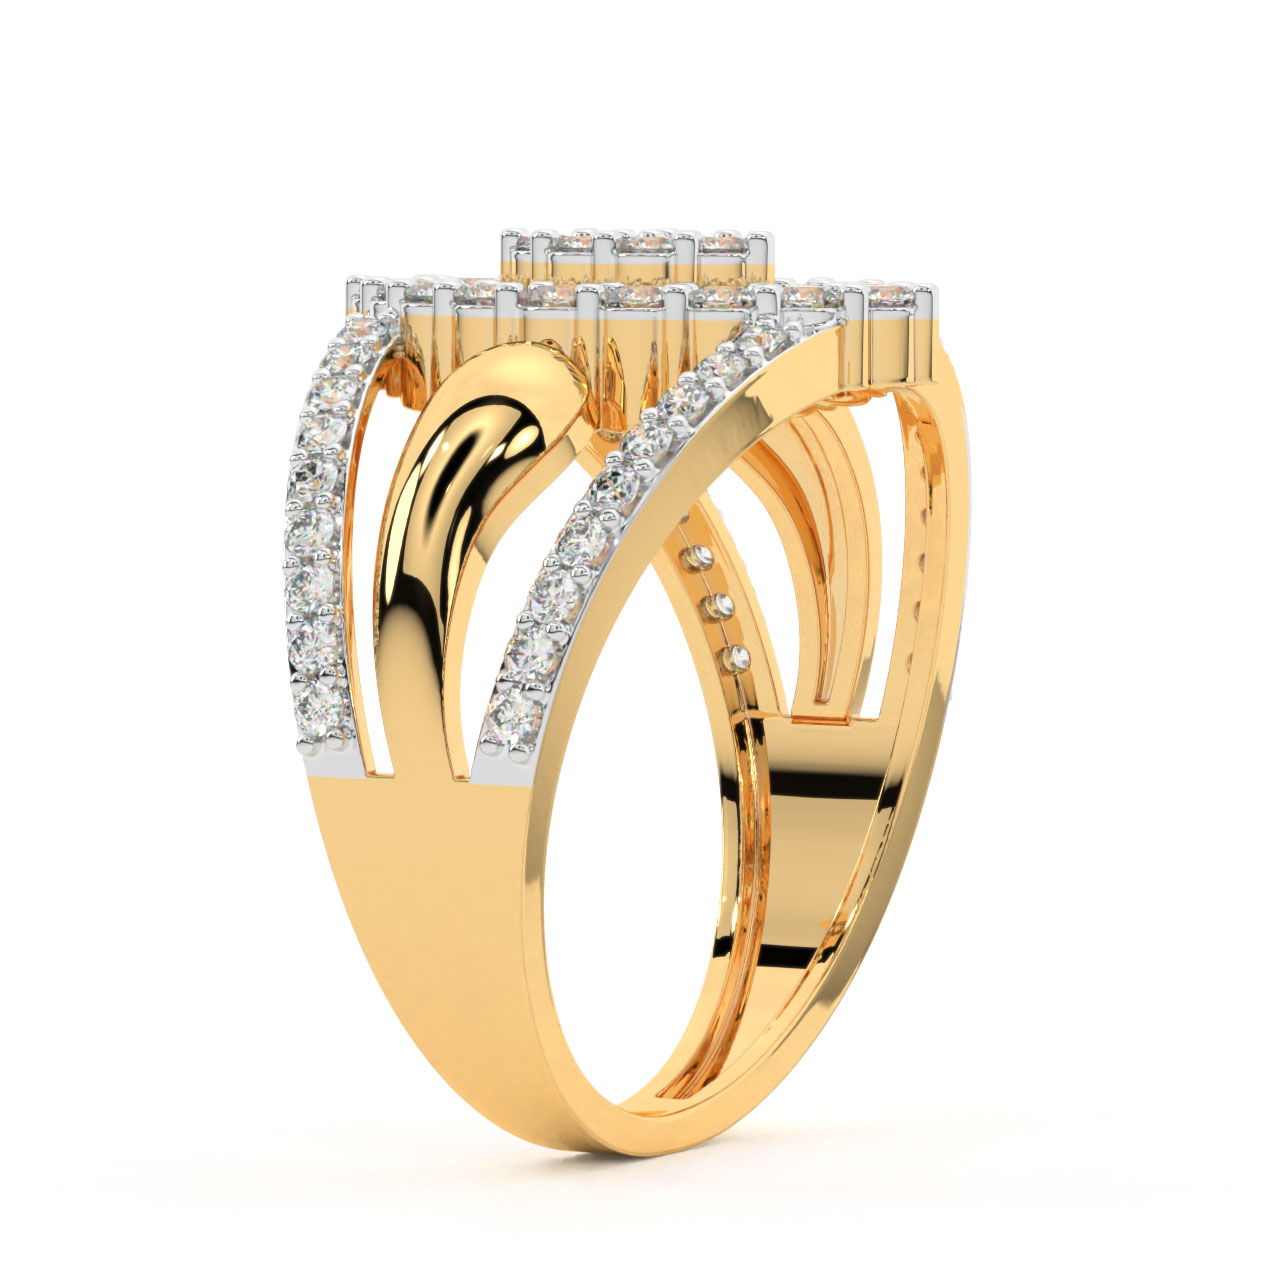 Jihan Round Diamond Engagement Ring